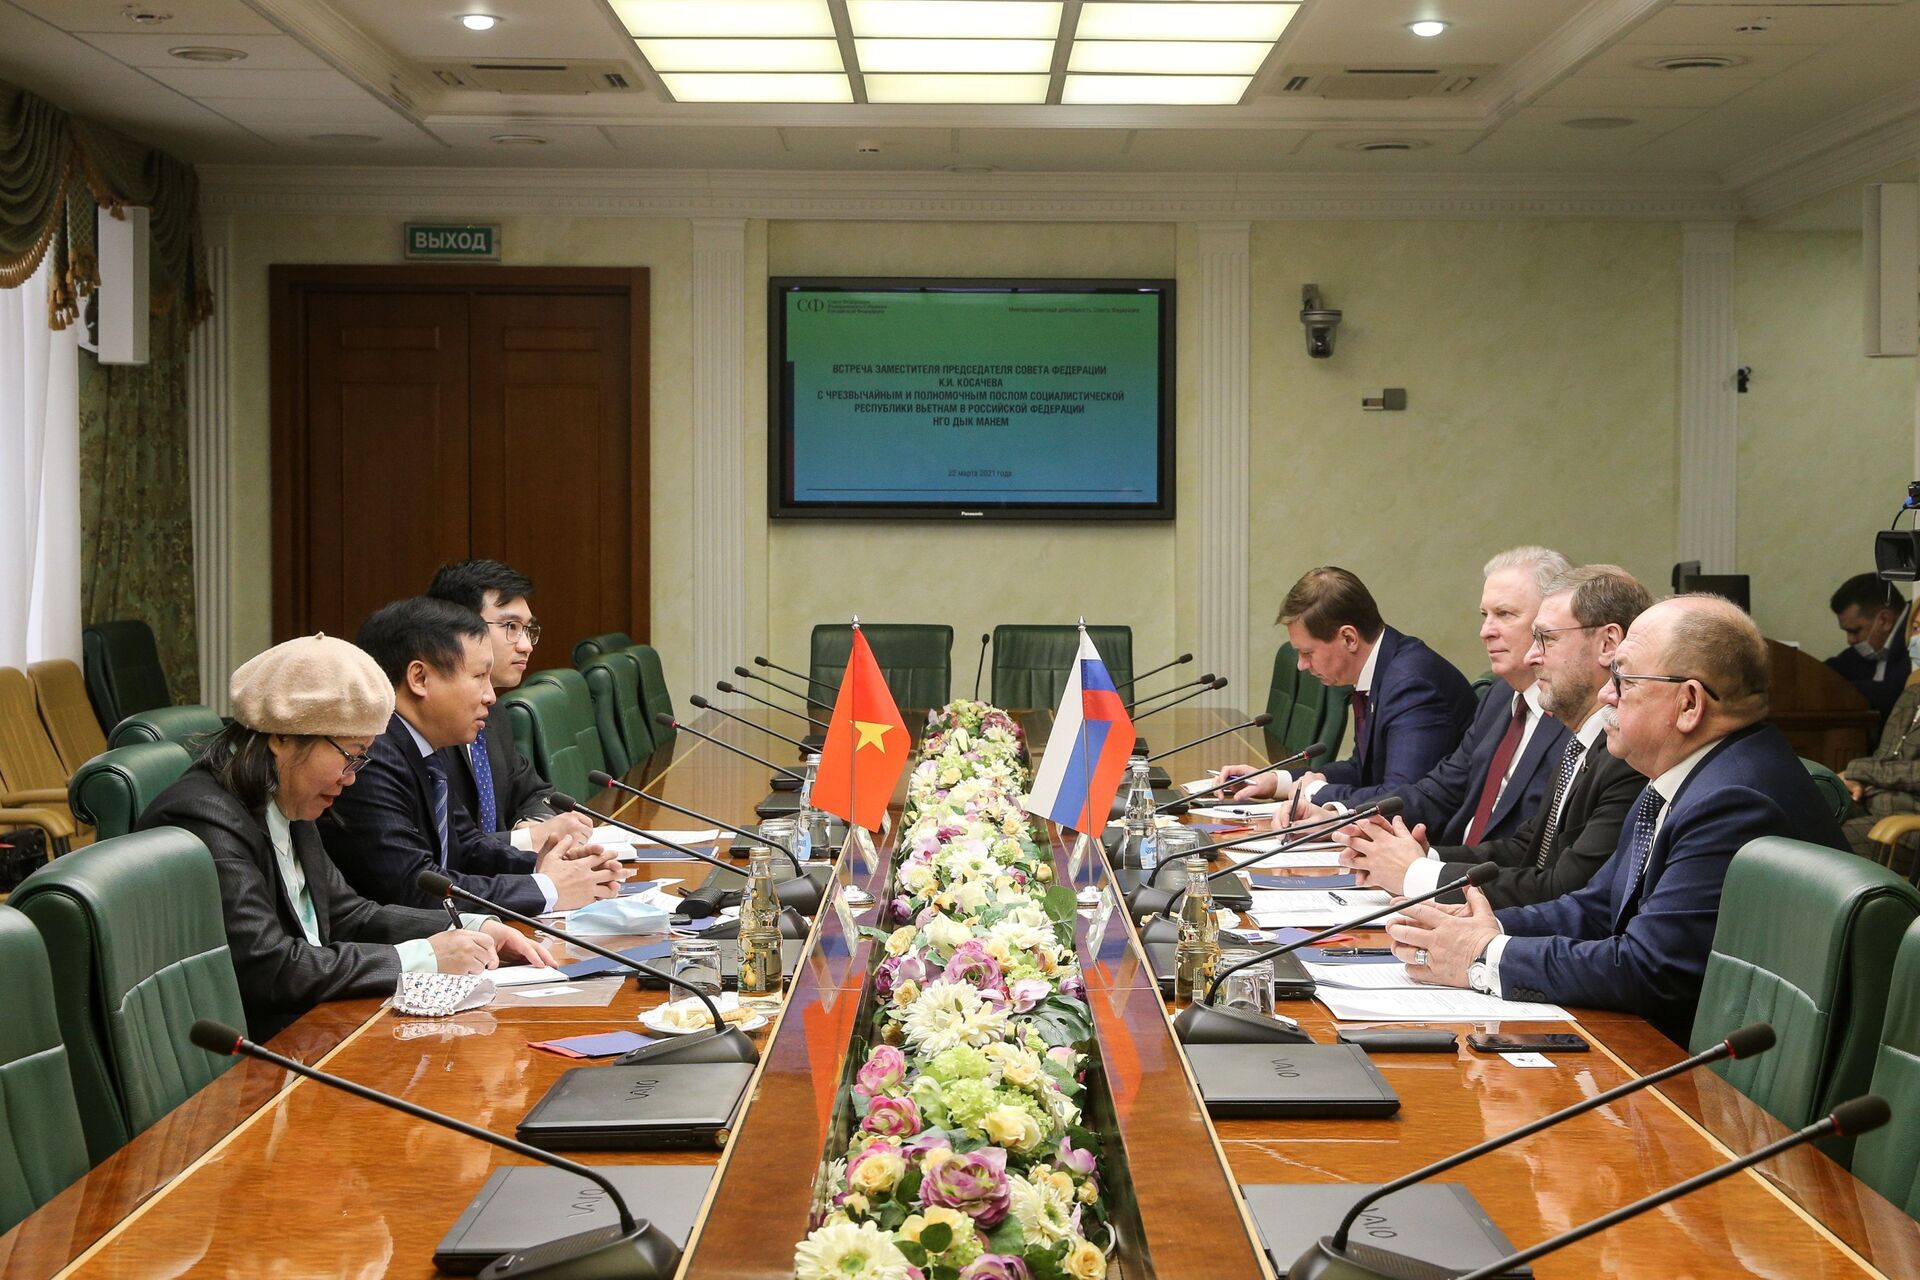 Thượng nghị sĩ Nga có ý định phát triển quan hệ với đồng nghiệp Việt Nam - Sputnik Việt Nam, 1920, 22.03.2021